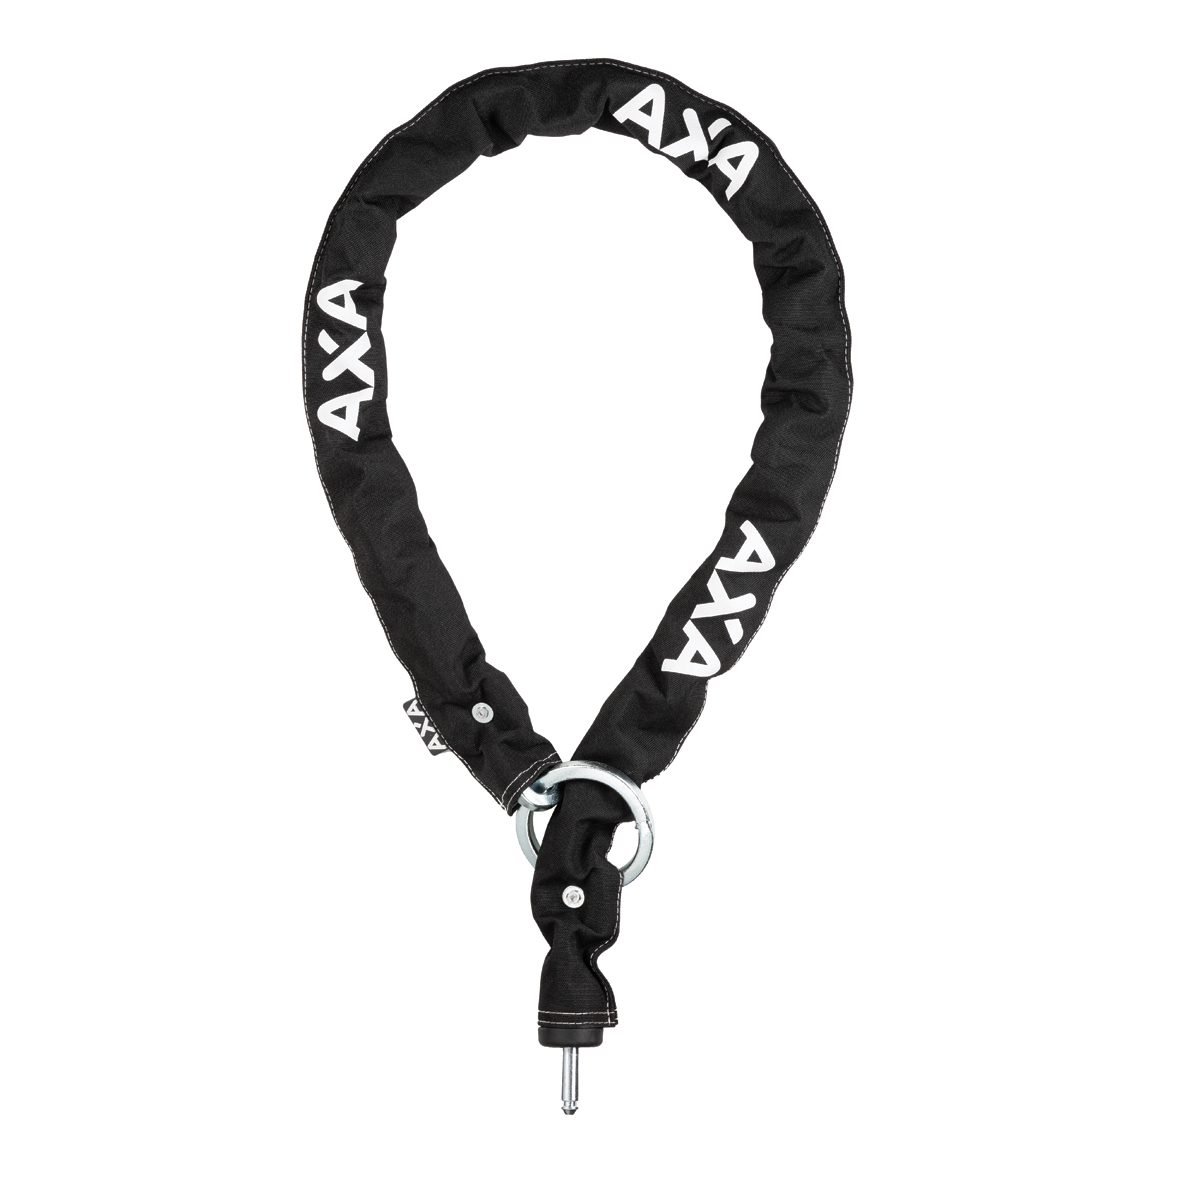 AXA Plug-in Kättinglås DPI 110/8.5  Svart Cykeltillbehör - Lås & säkerhet - Kättinglås